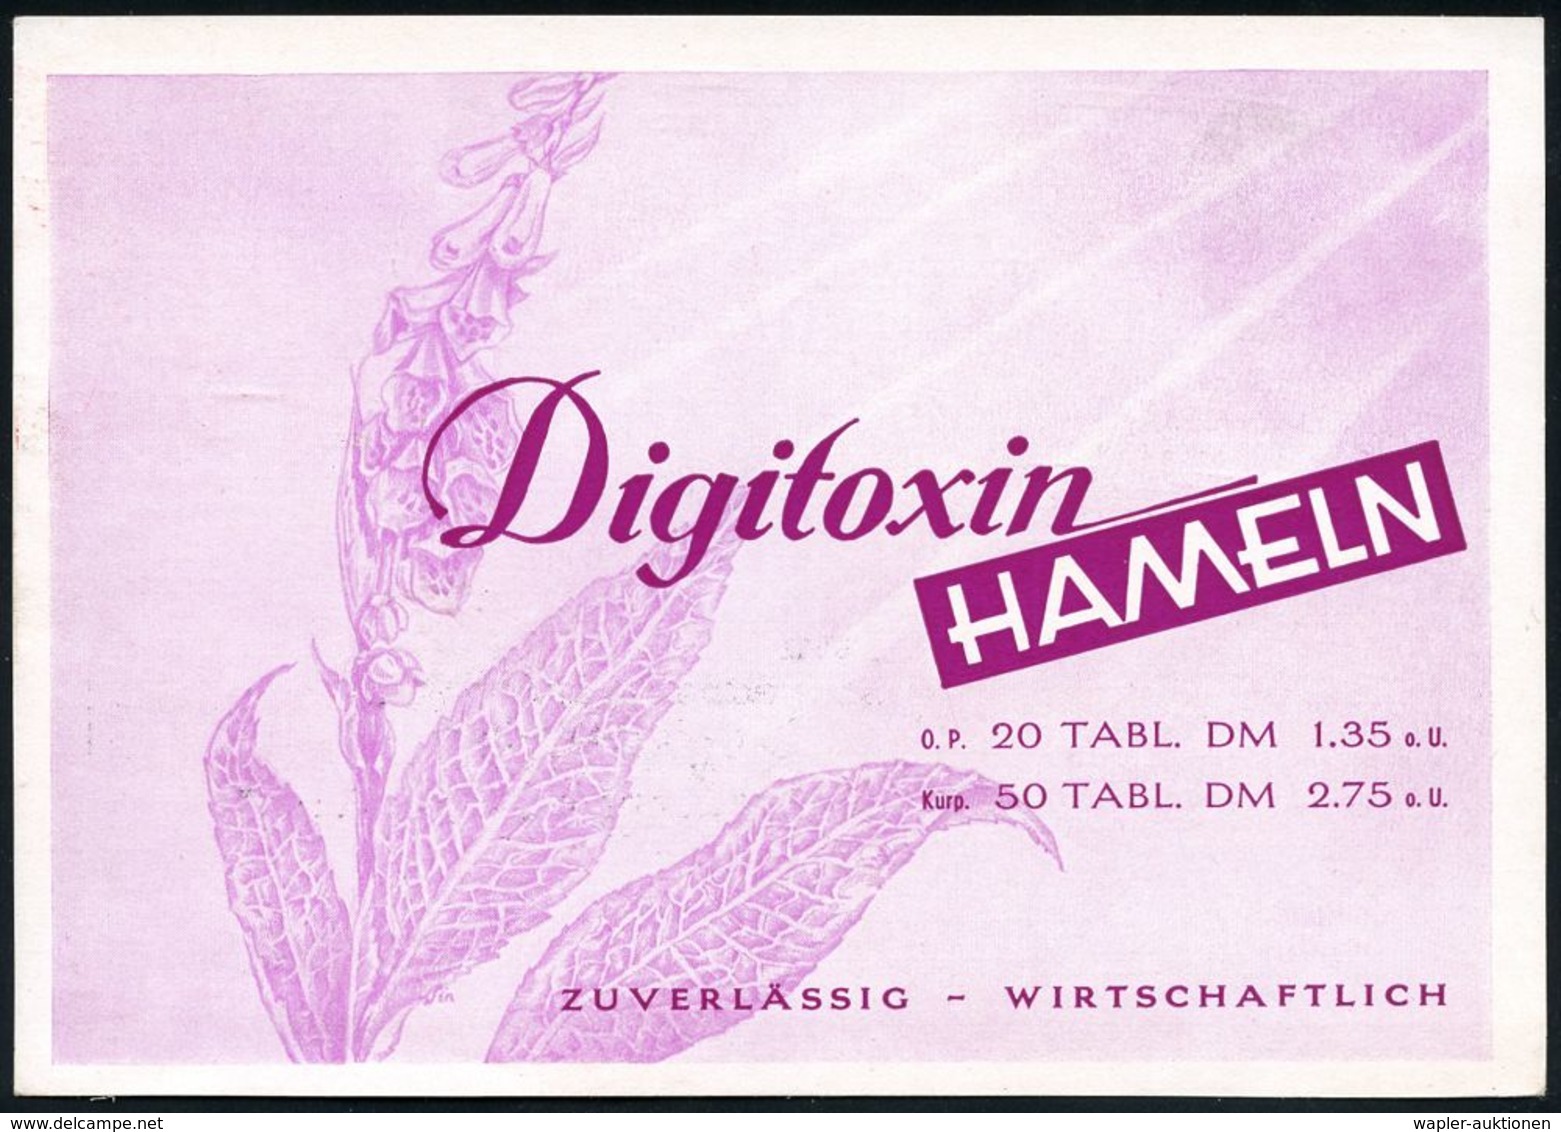 PHARMAZIE / MEDIKAMENTE : (20a) HAMELN 1/ PHARMAZEUTISCHE FABRIK HAMELN 1953 (14.7.) AFS = Firmen-Logo Auf Monochromer R - Pharmacie